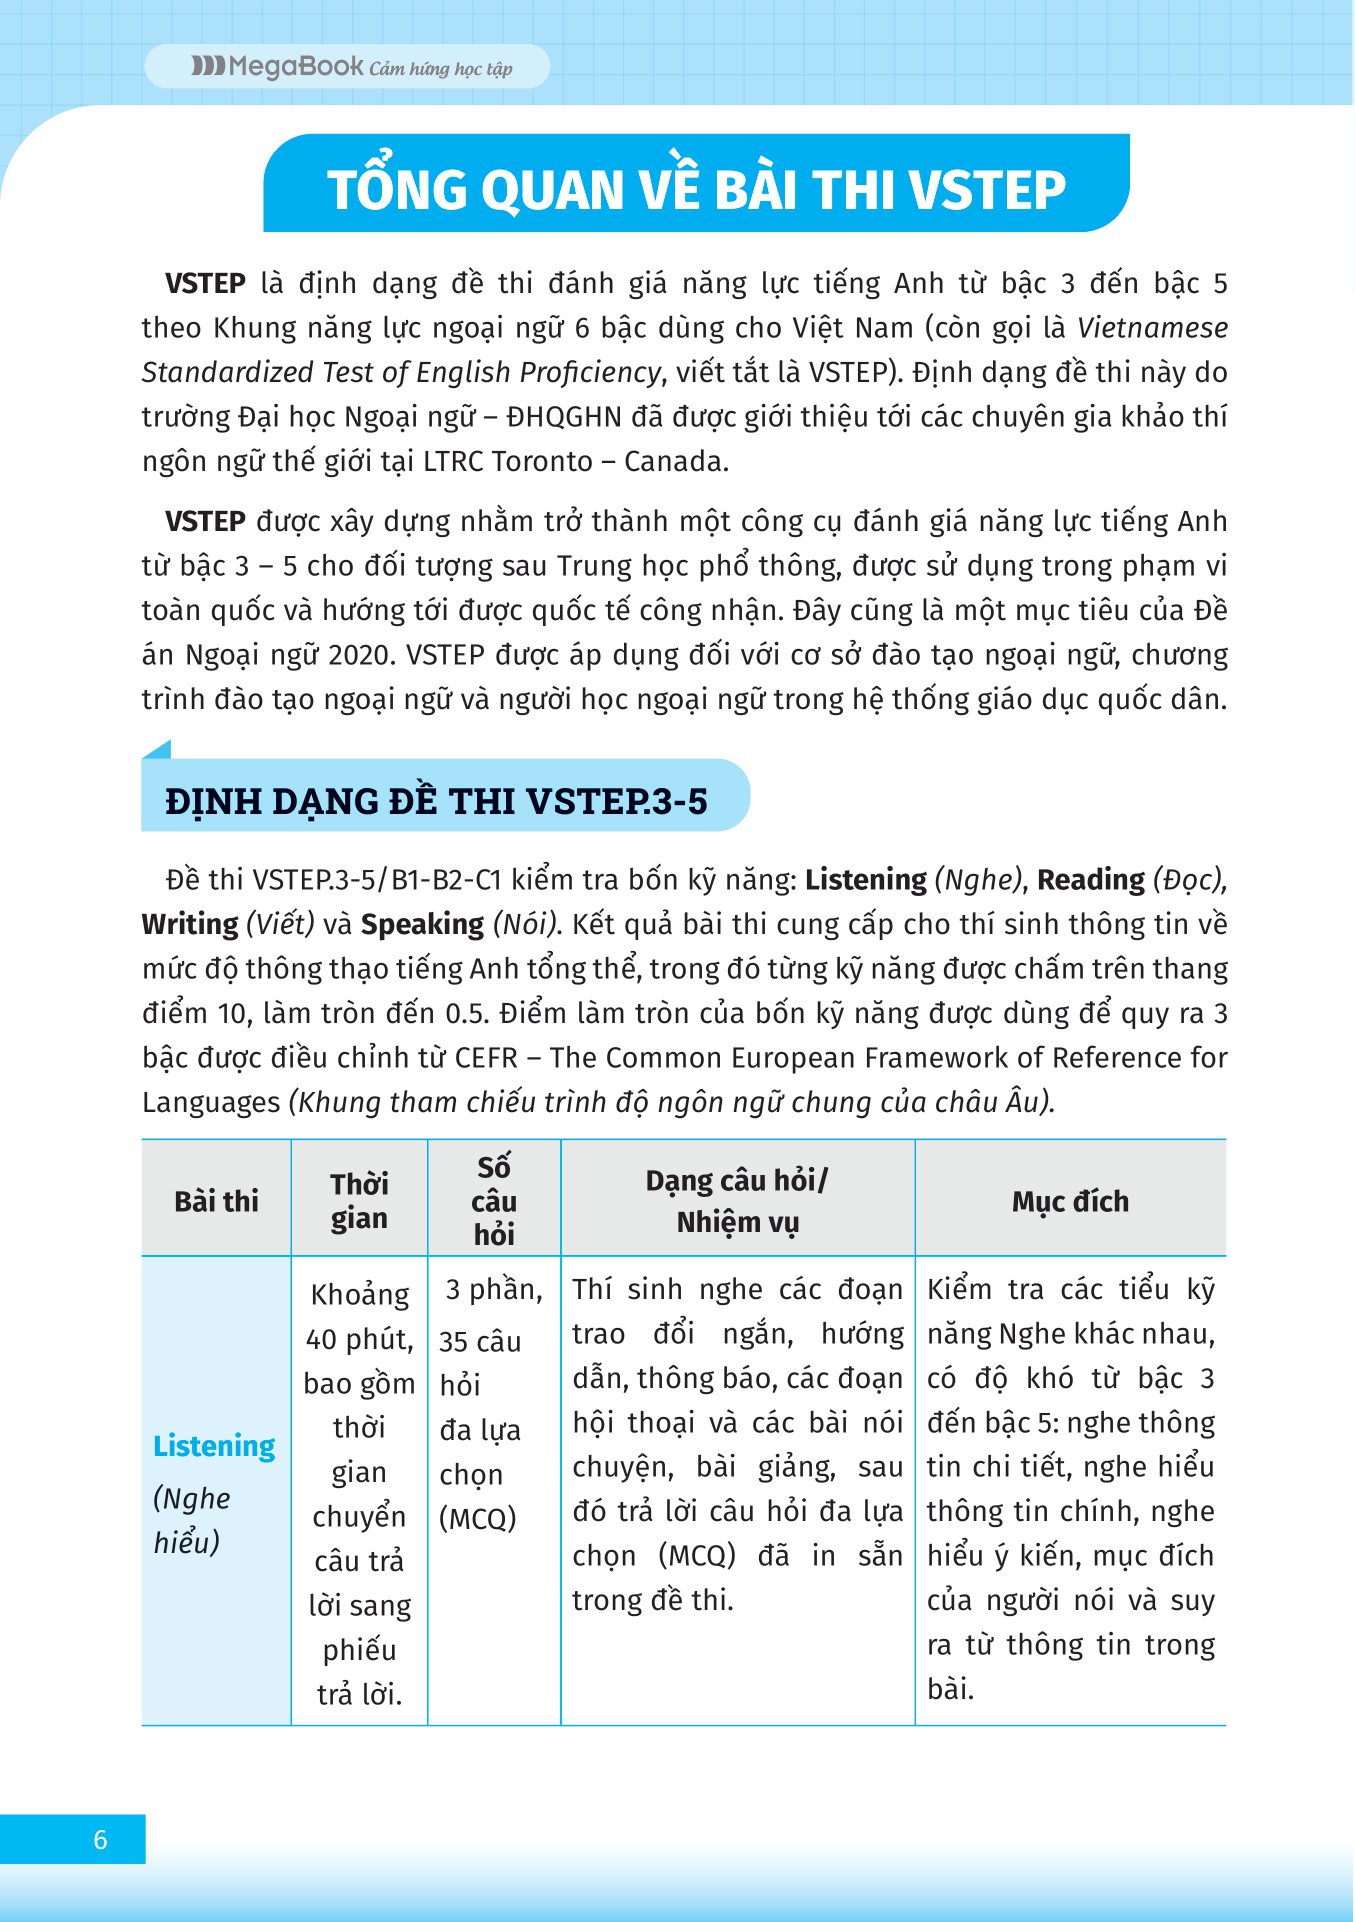 VSTEP - Chinh Phục Kỹ Năng Viết Bậc B1, B2 PDF